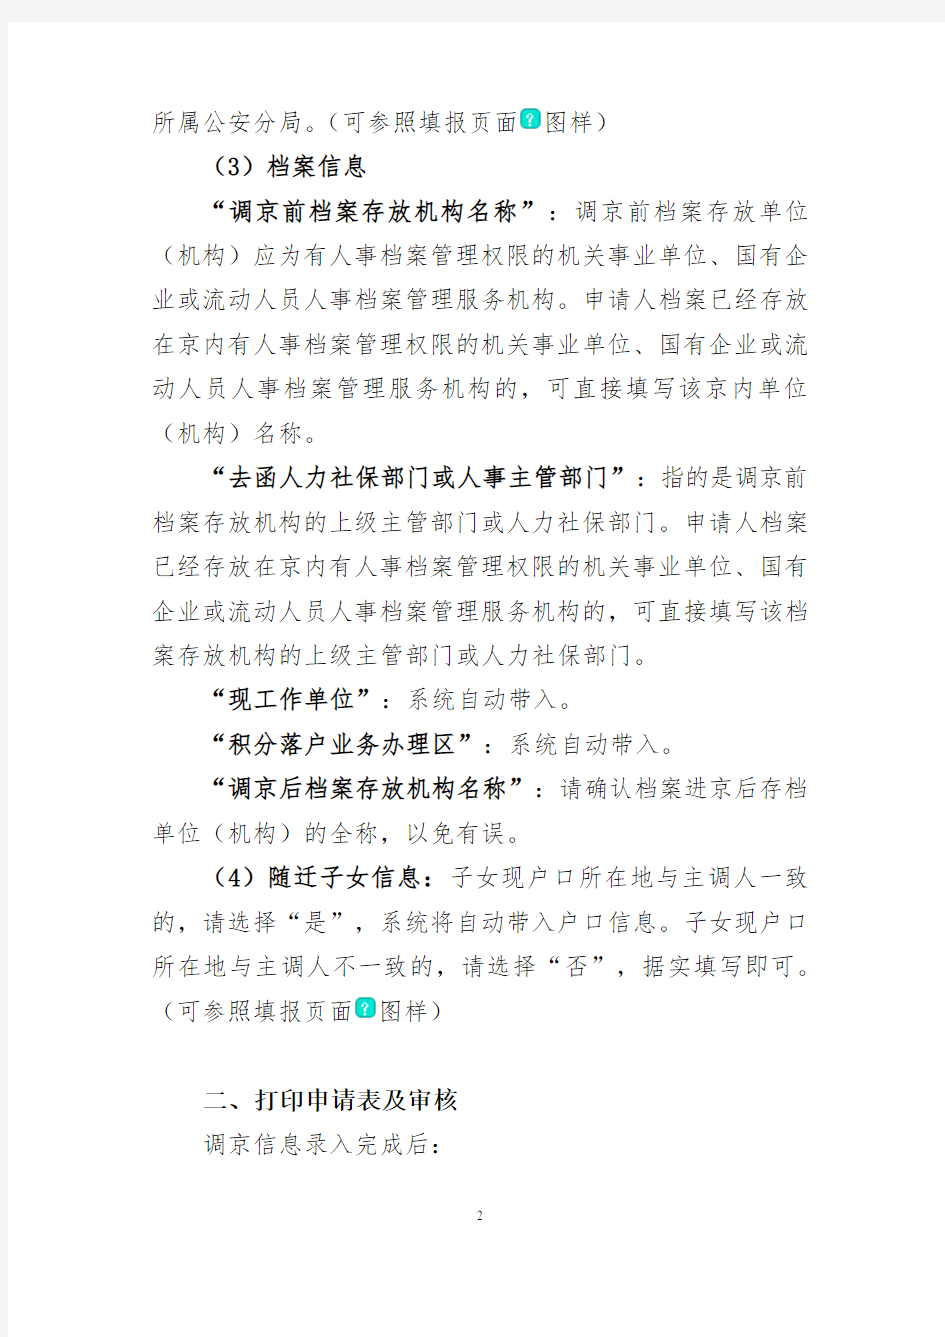 积分落户人员户口迁移及档案调动办理说明-Beijing